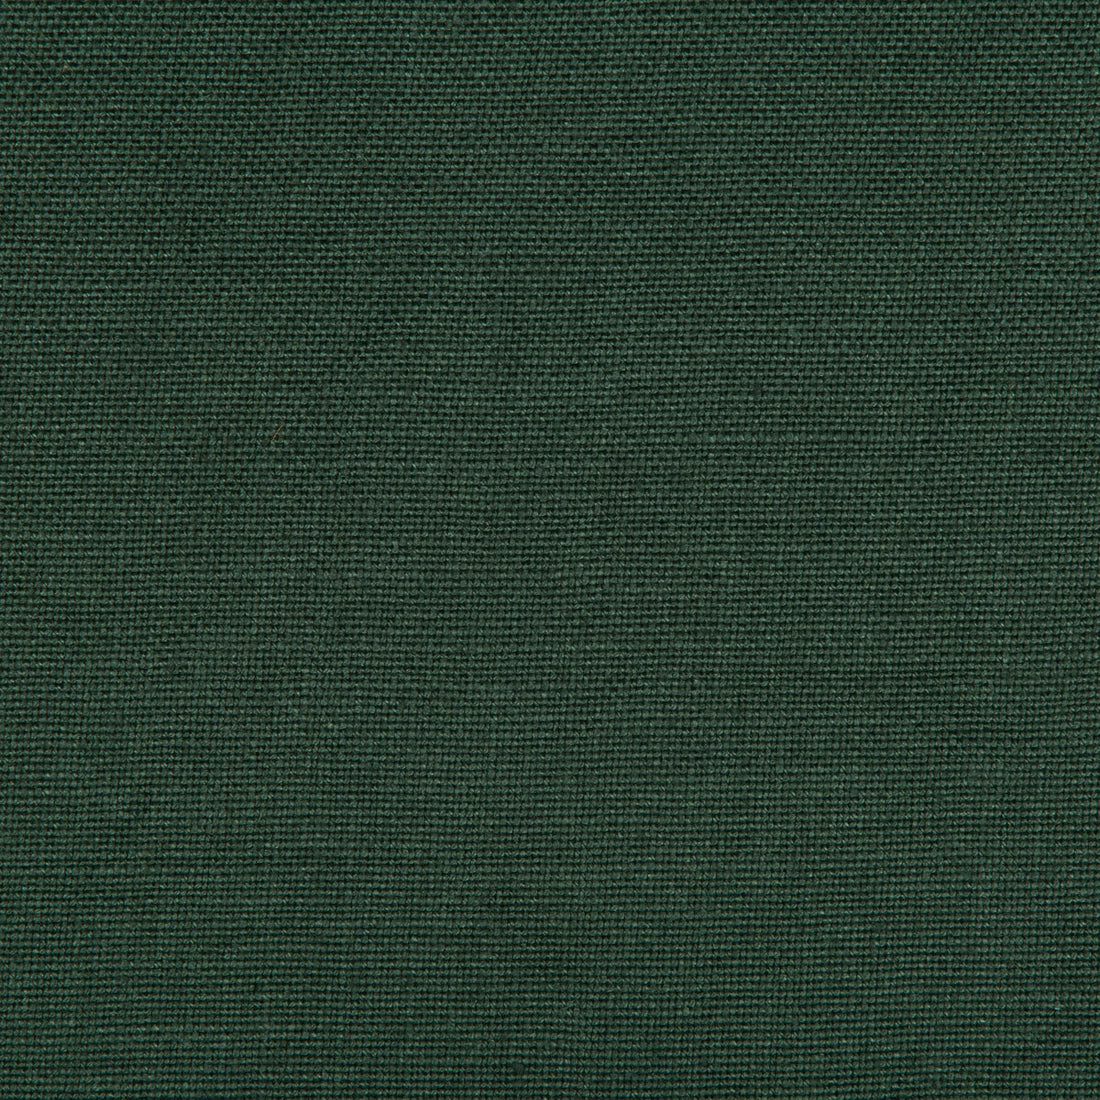 Kravet Basics fabric in 35342-30 color - pattern 35342.30.0 - by Kravet Basics